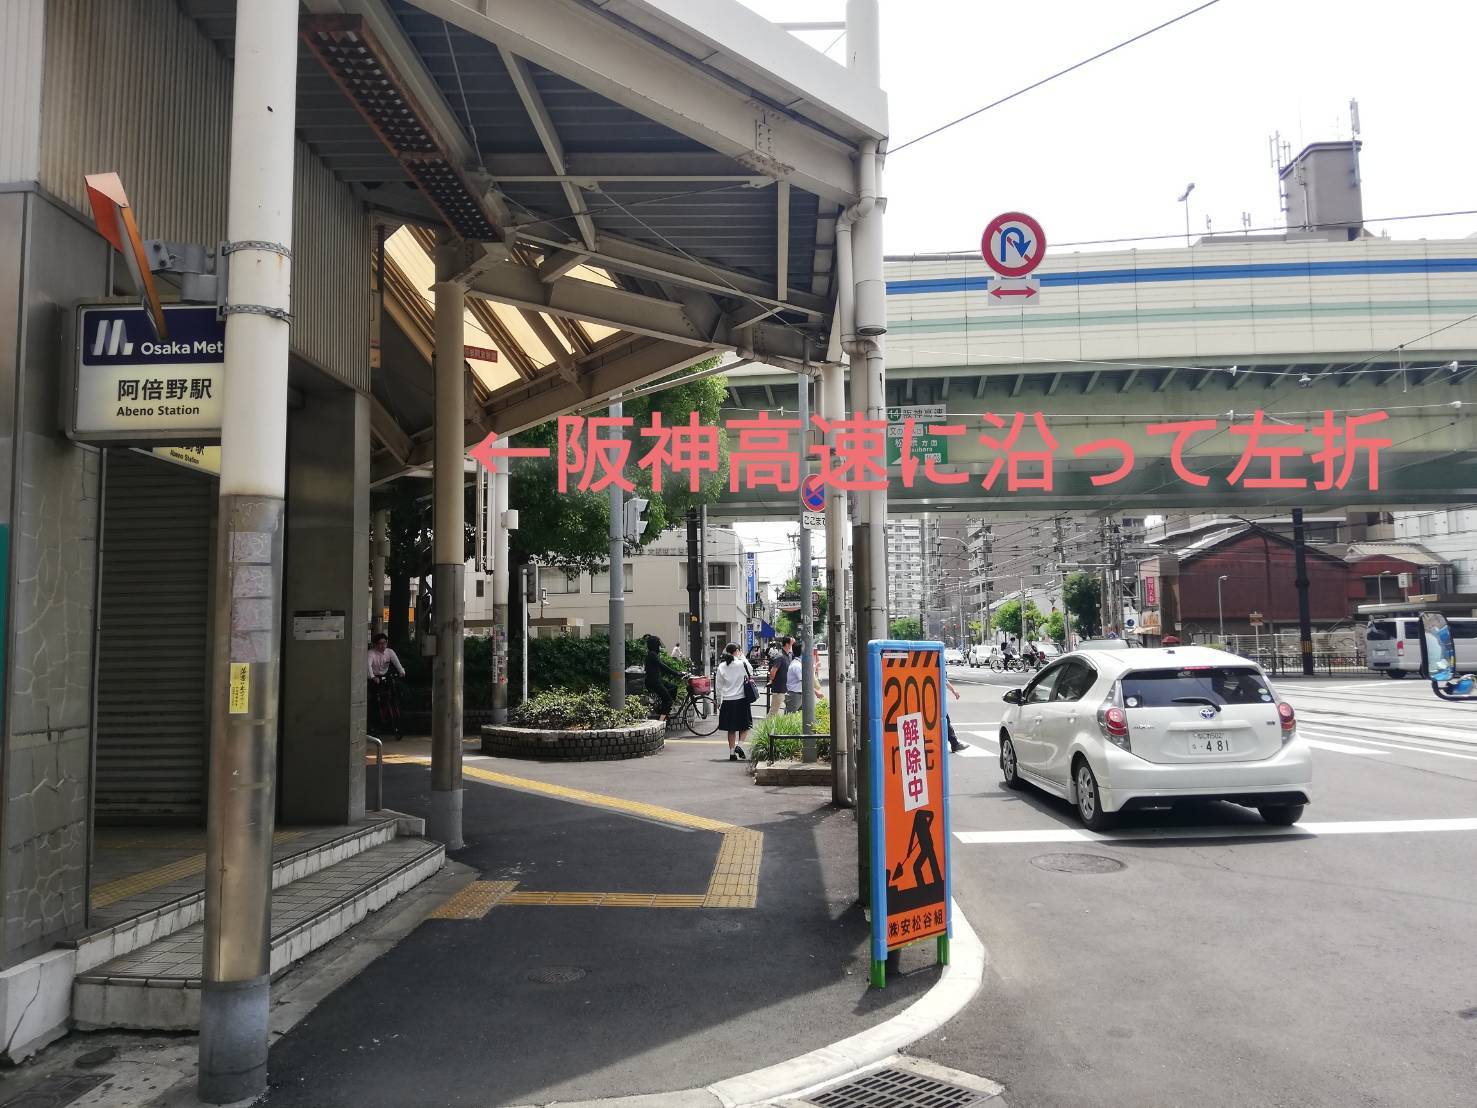 阿倍野駅を出た所の道路